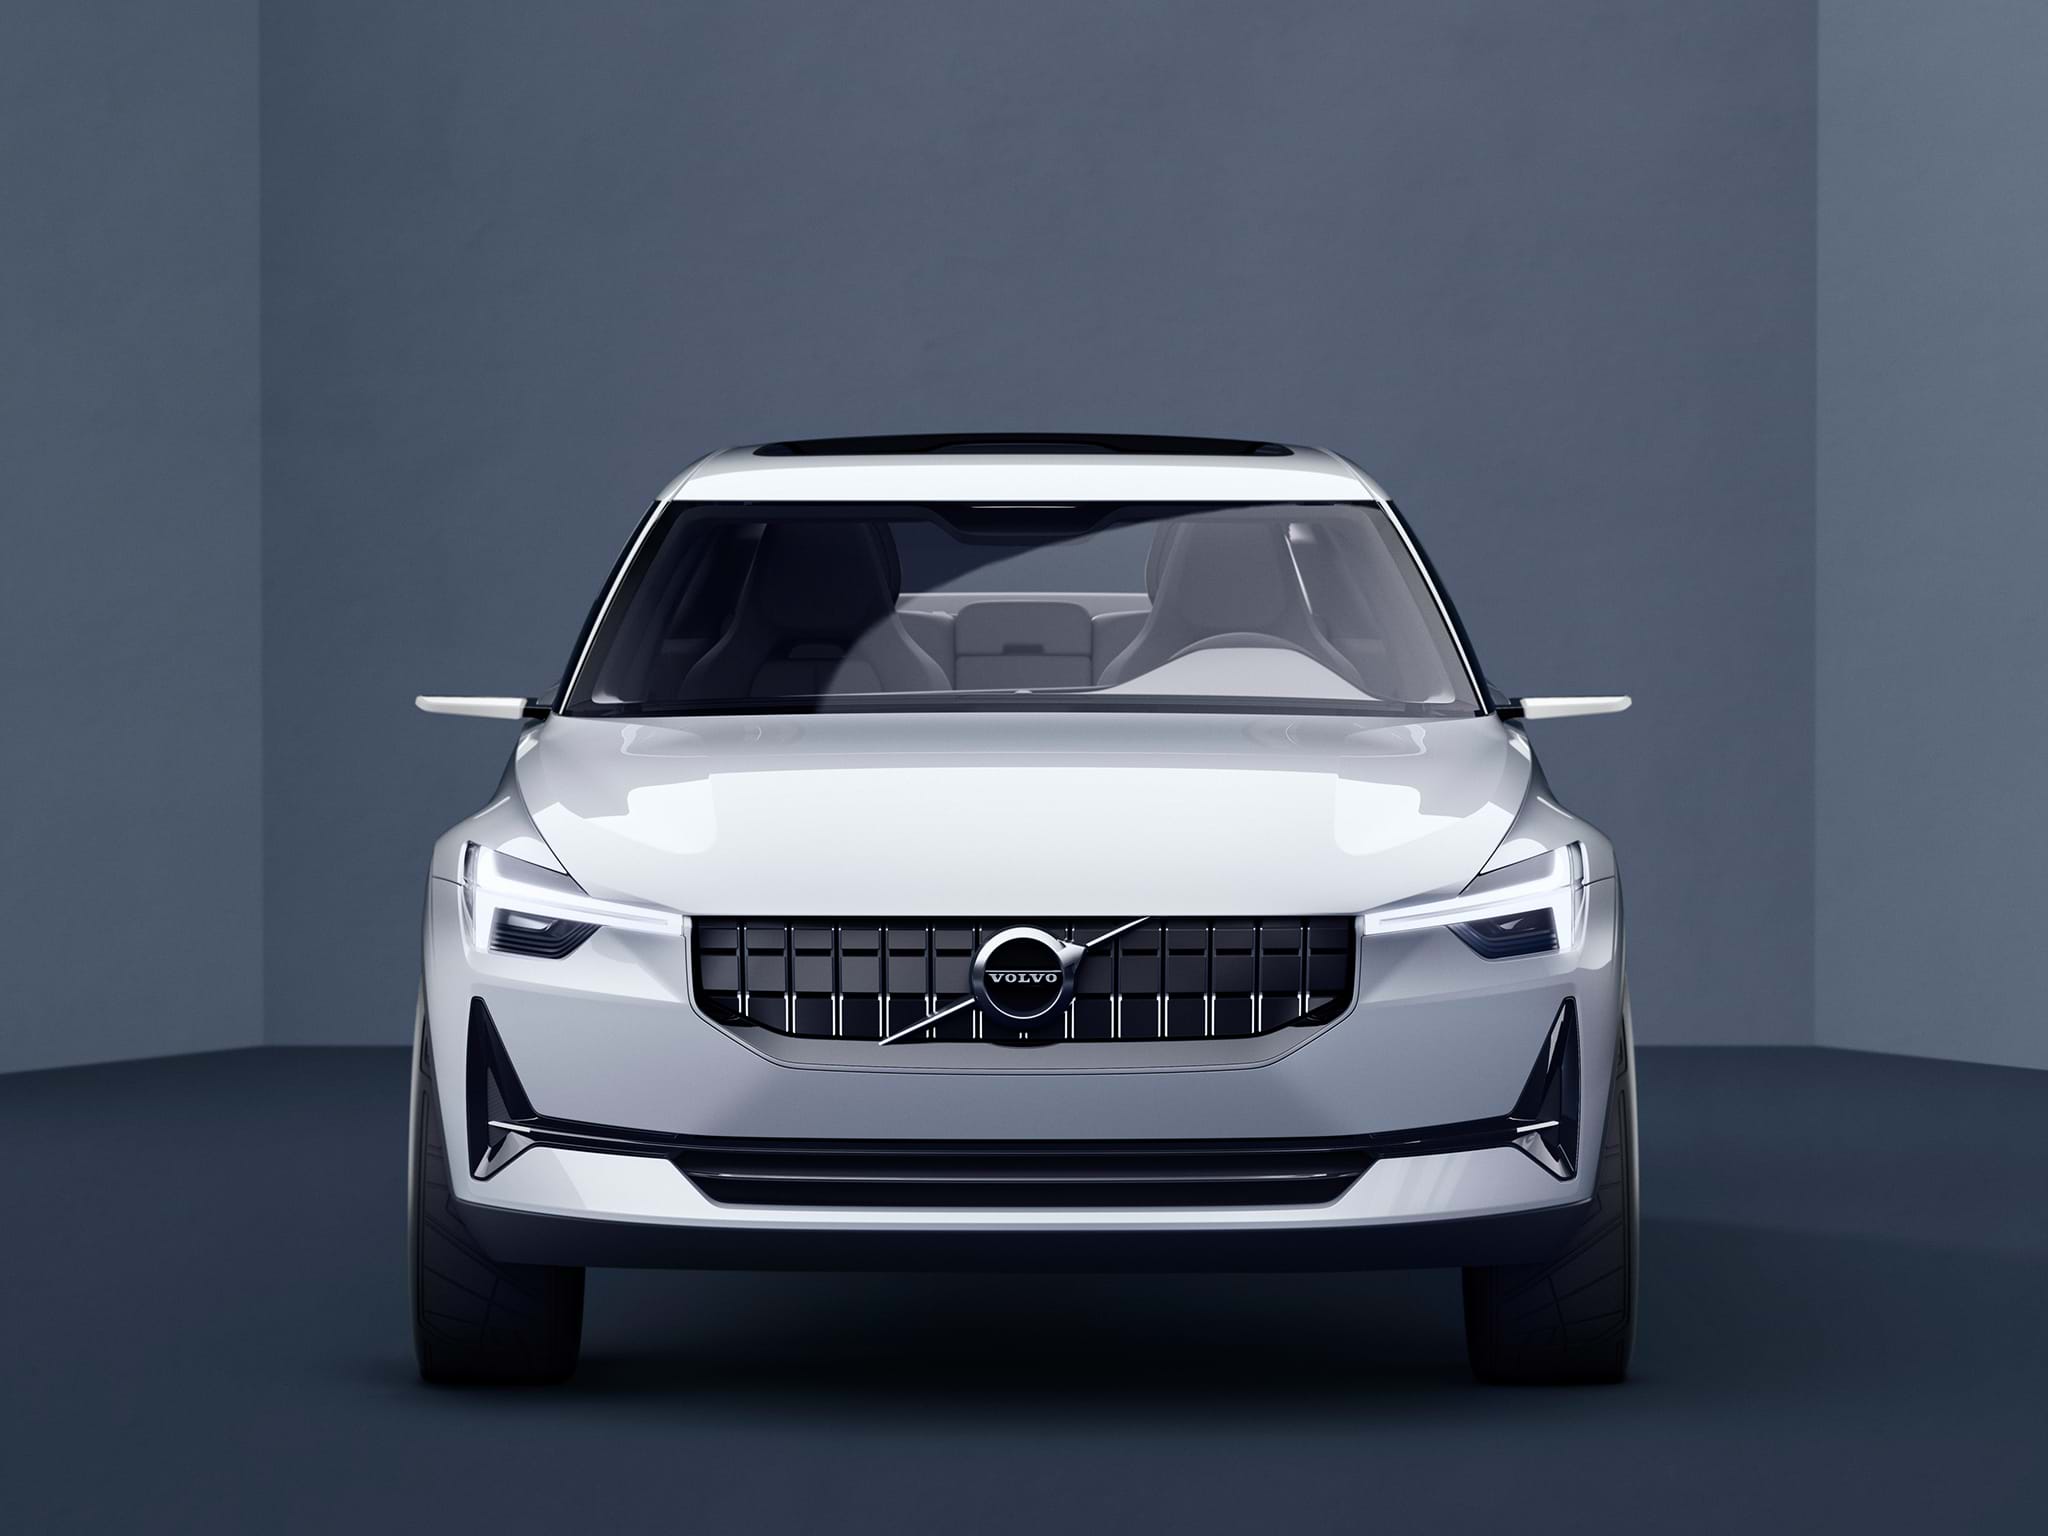 Mașină Volvo Concept 40 sedan albă, văzută din față